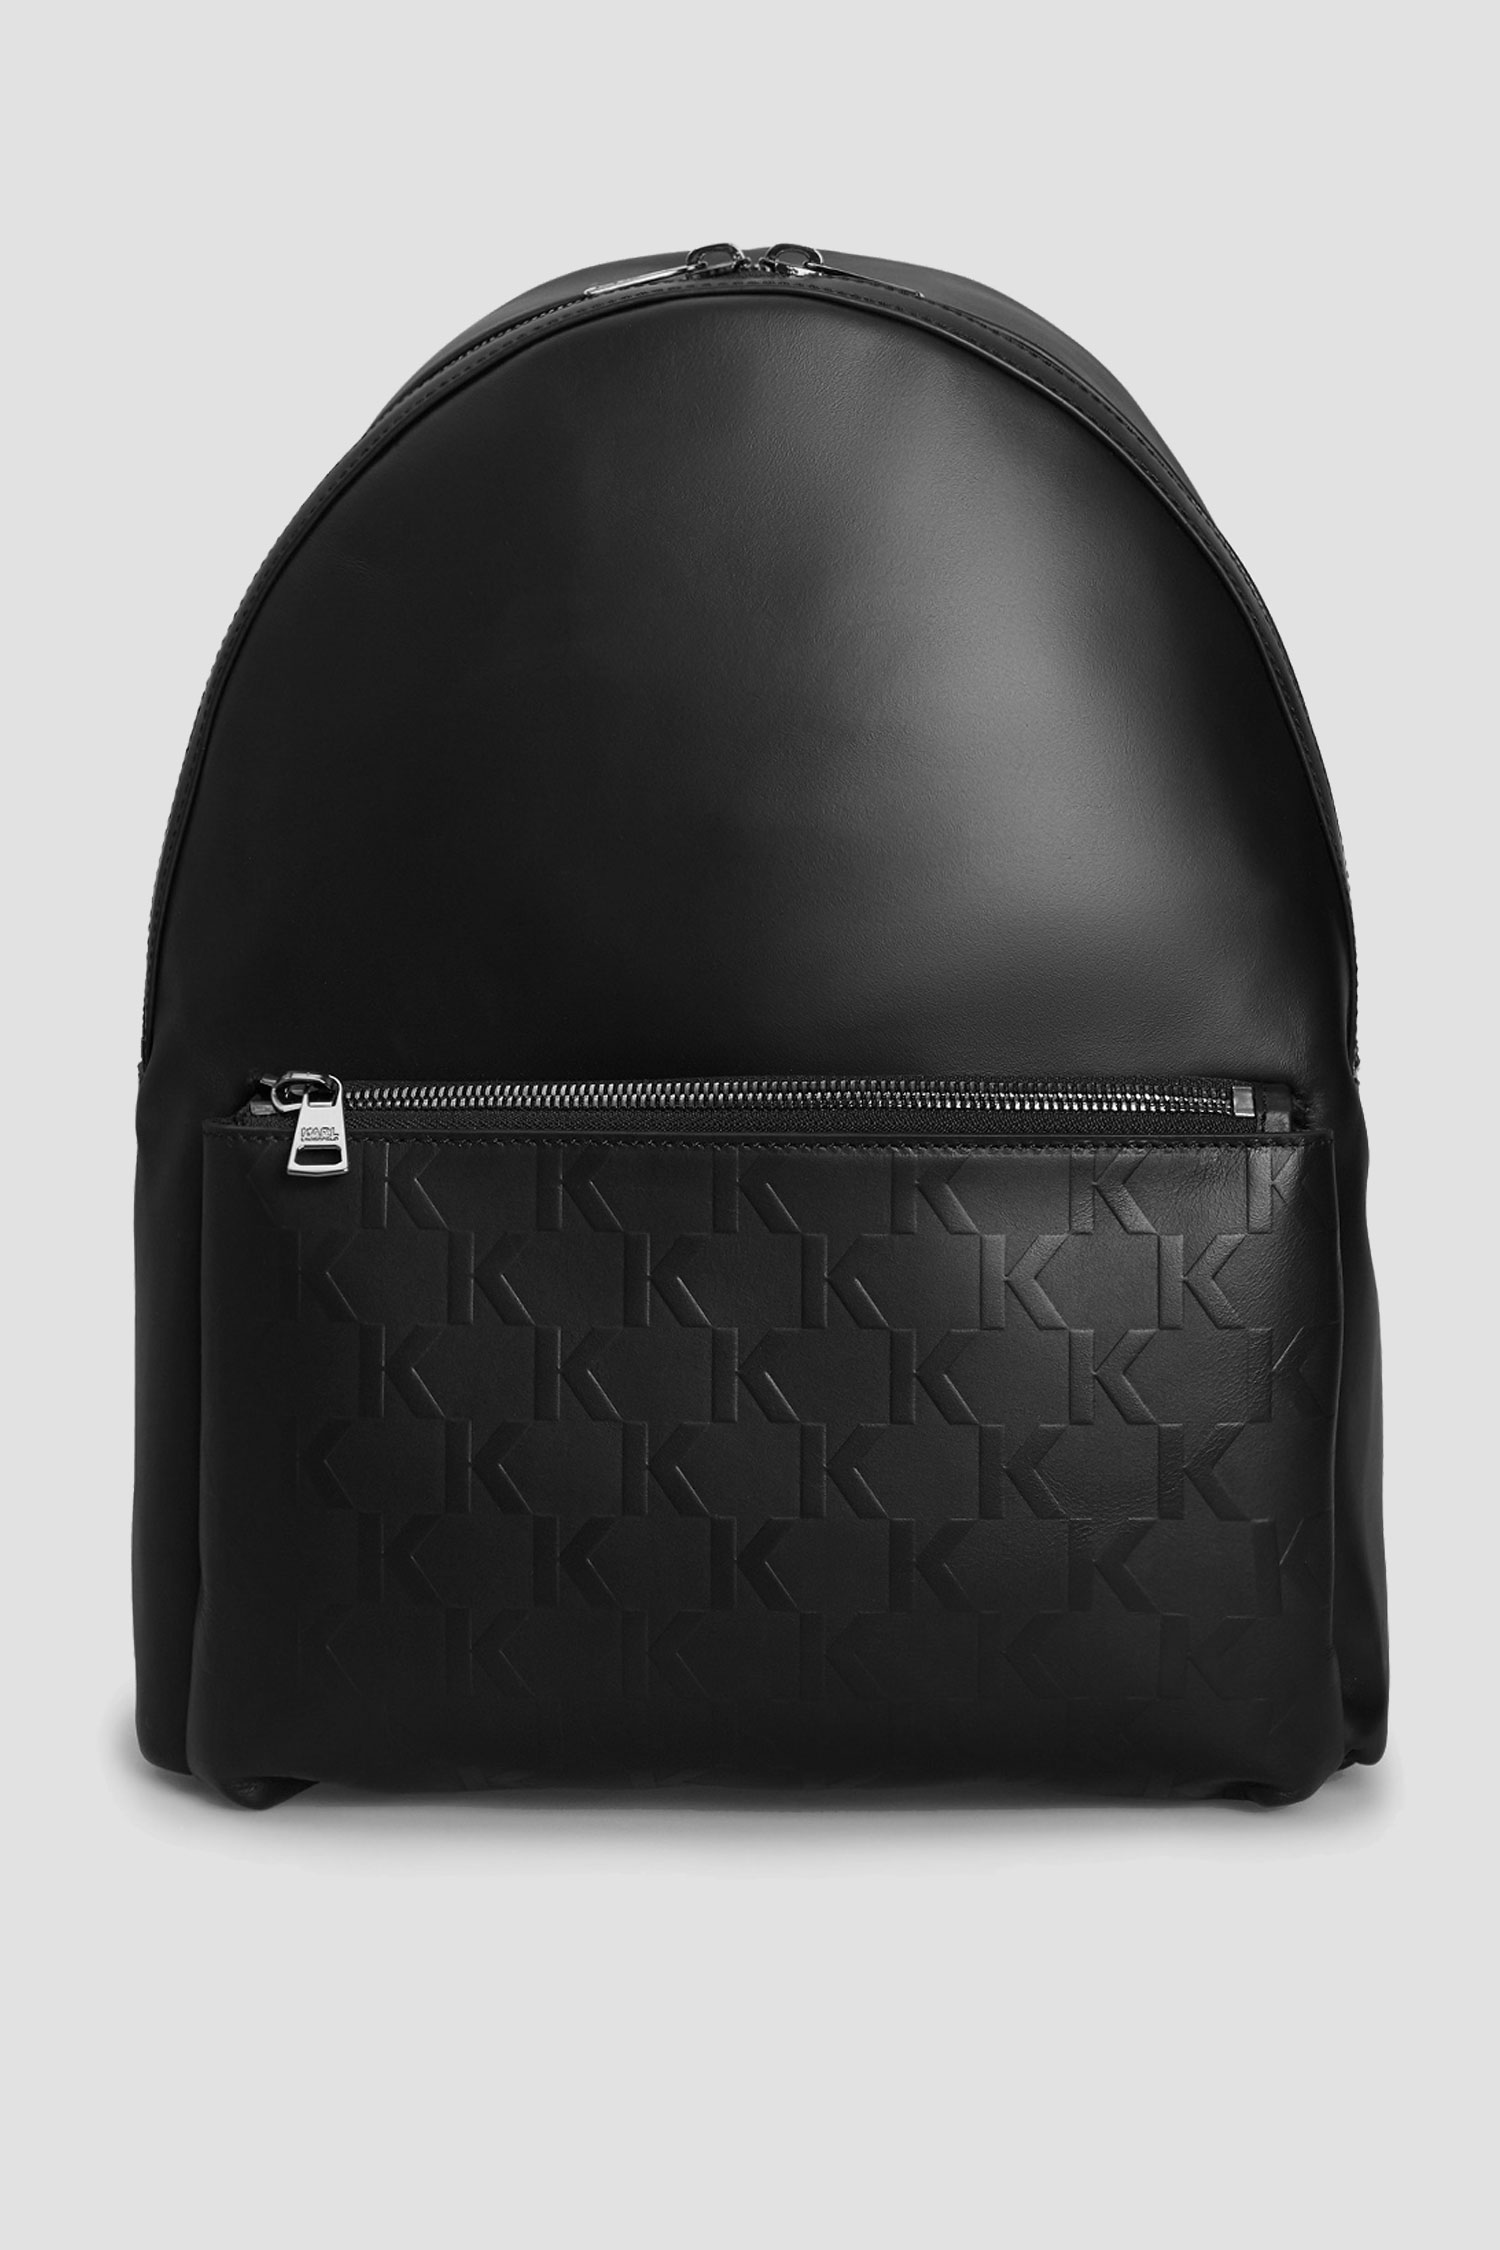 Чорний шкіряний рюкзак для хлопців Karl Lagerfeld 511453.815901;990